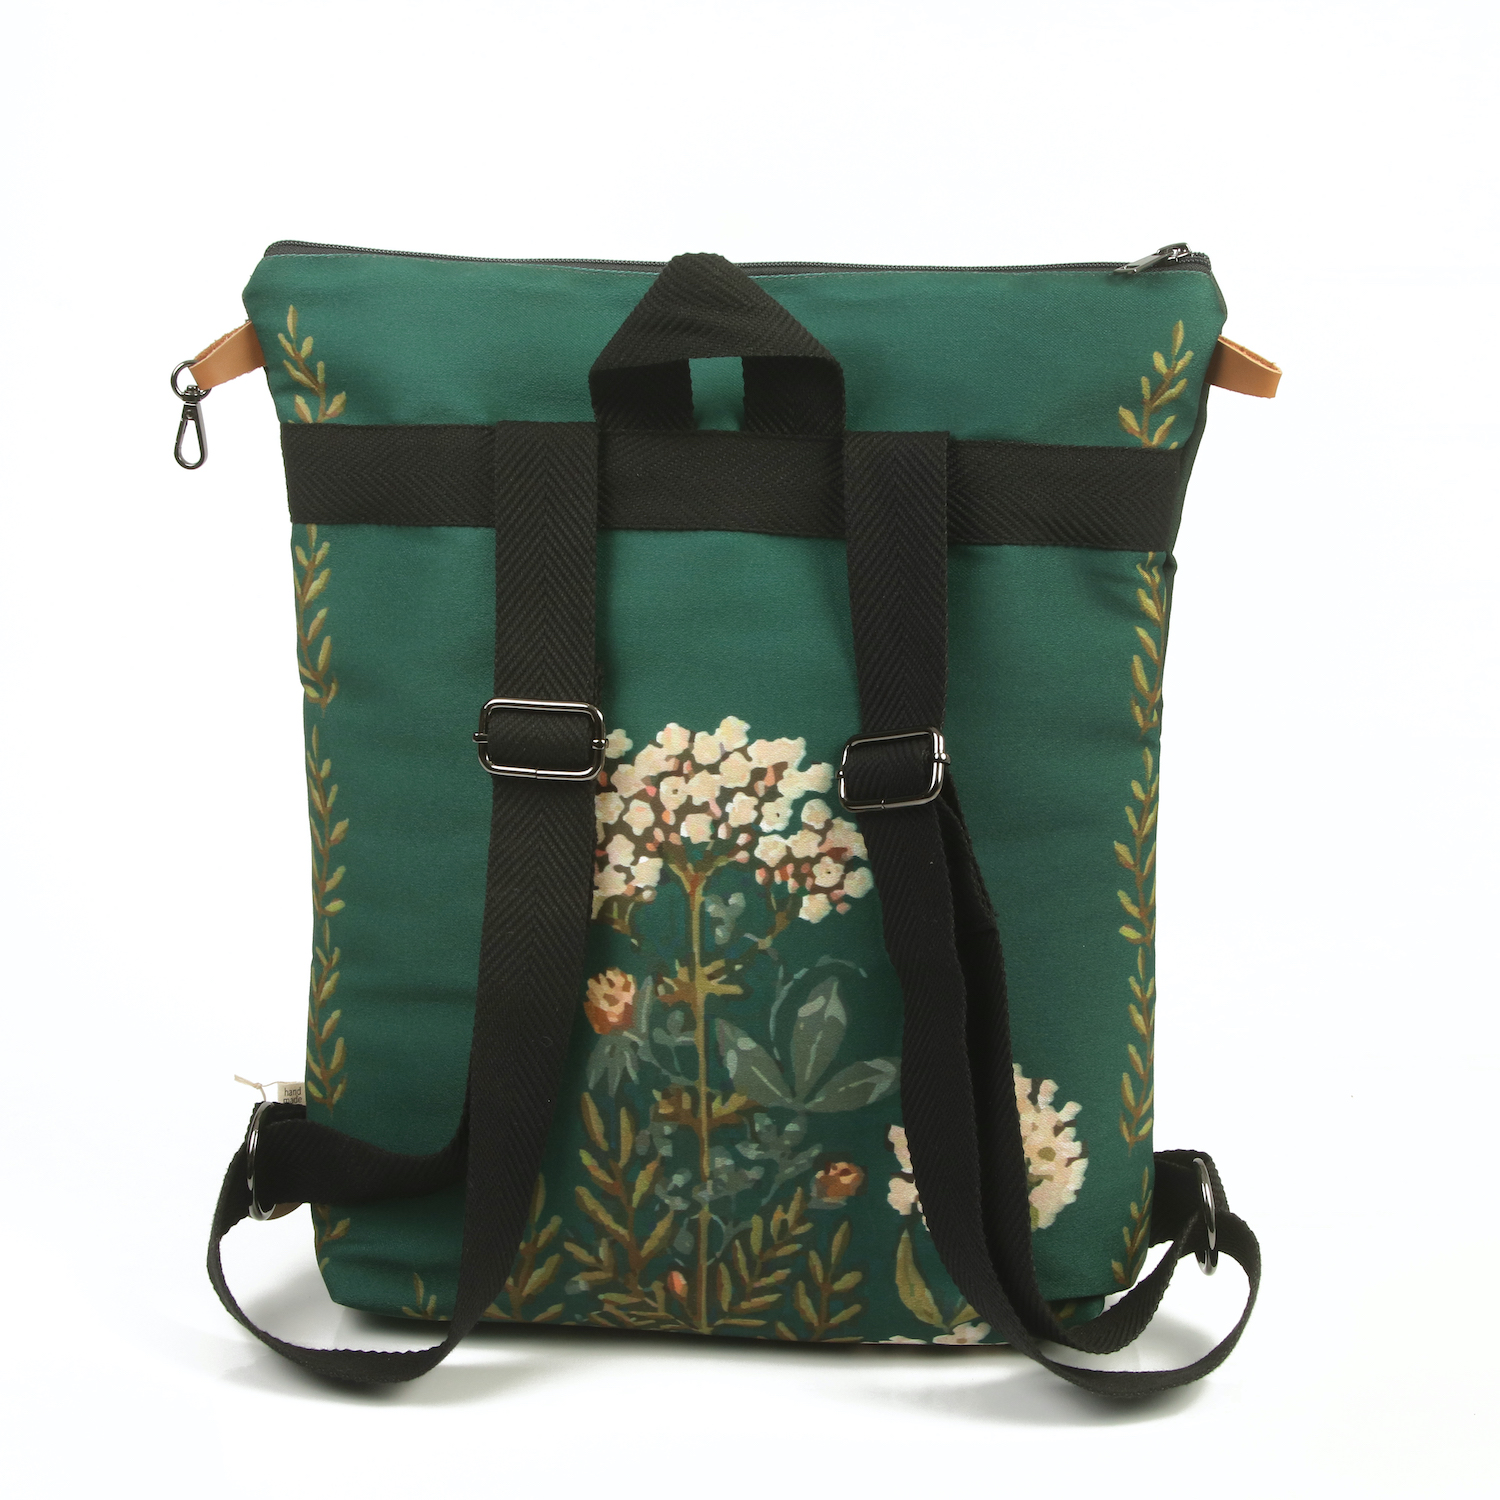 LazyDayz-Designs-Backpack-γυναικείος-σάκος-πλάτης-χειροποίητος bb0509c